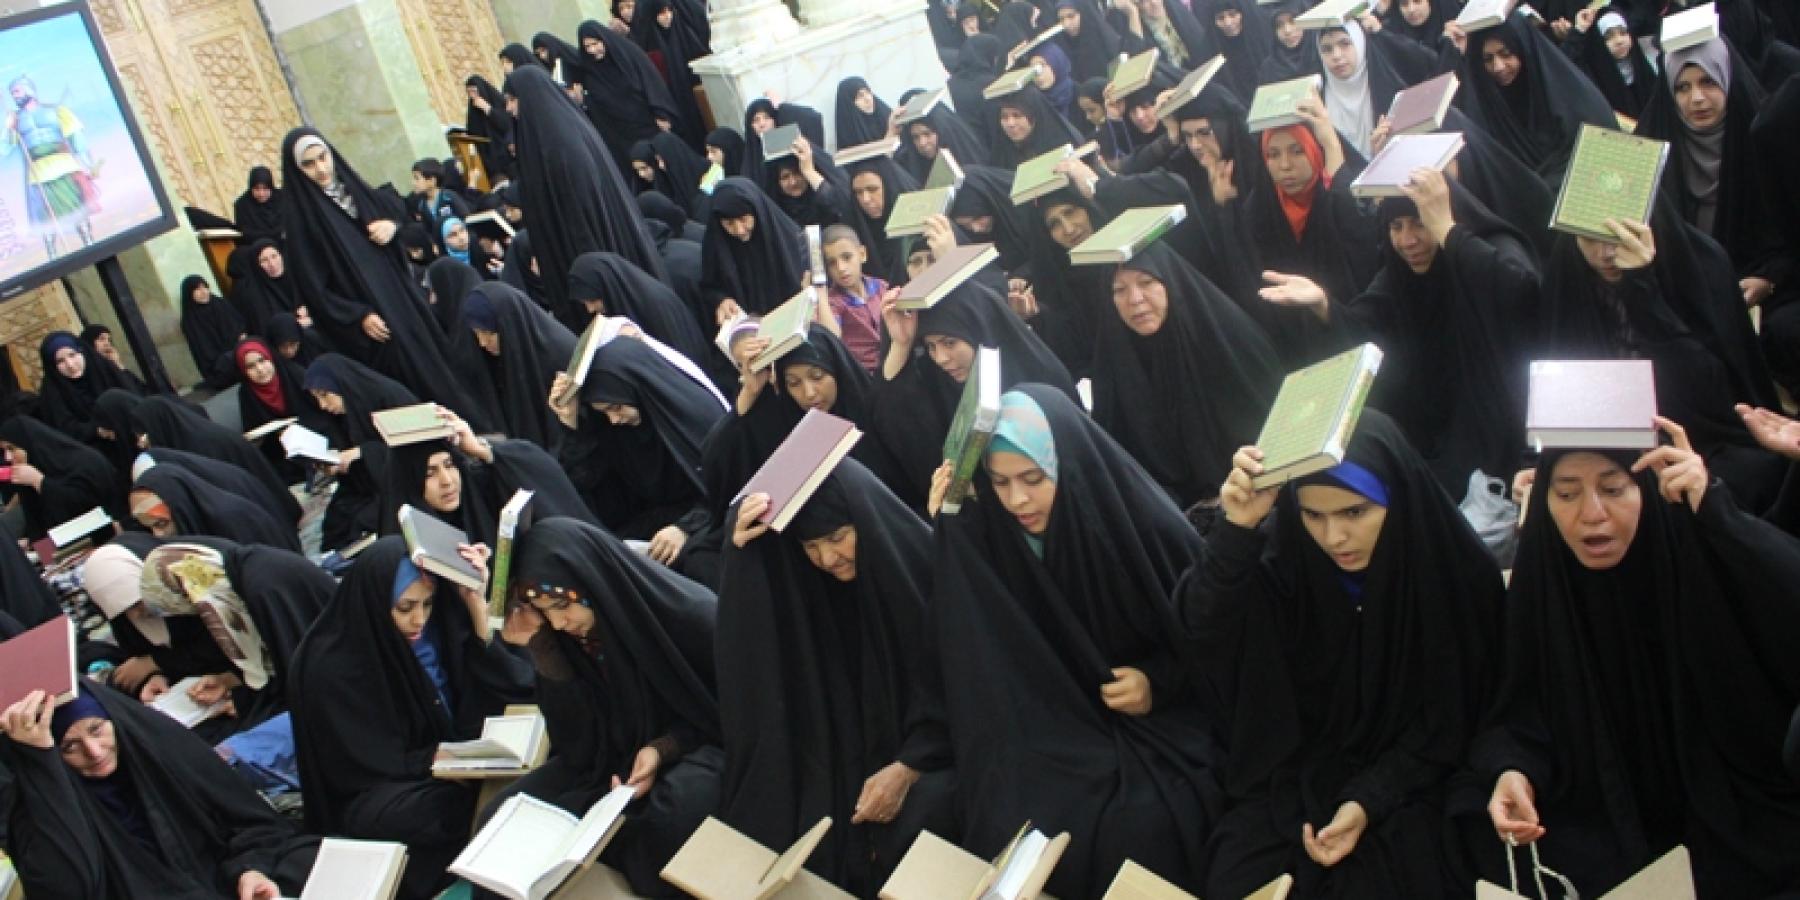  شعبة التعليم الديني النسوية  تحيي مراسم ليالي القدر في رواق أبي طالب (عليه السلام) 